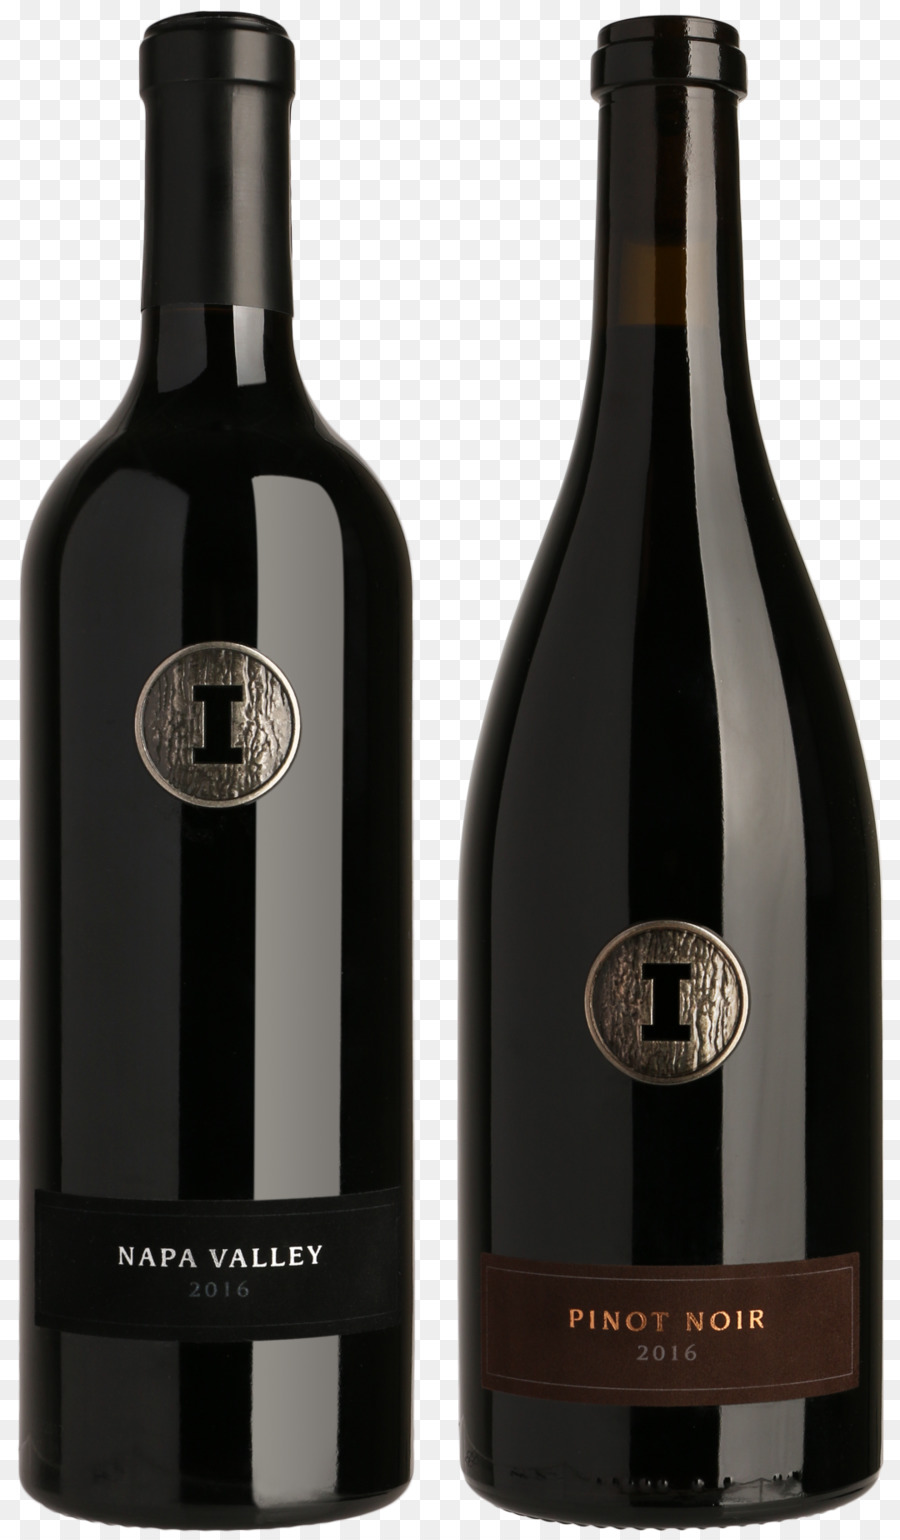 Rượu thung Lũng Napa dự Trữ Vượt Bậc Hút noir Merlot - Rượu